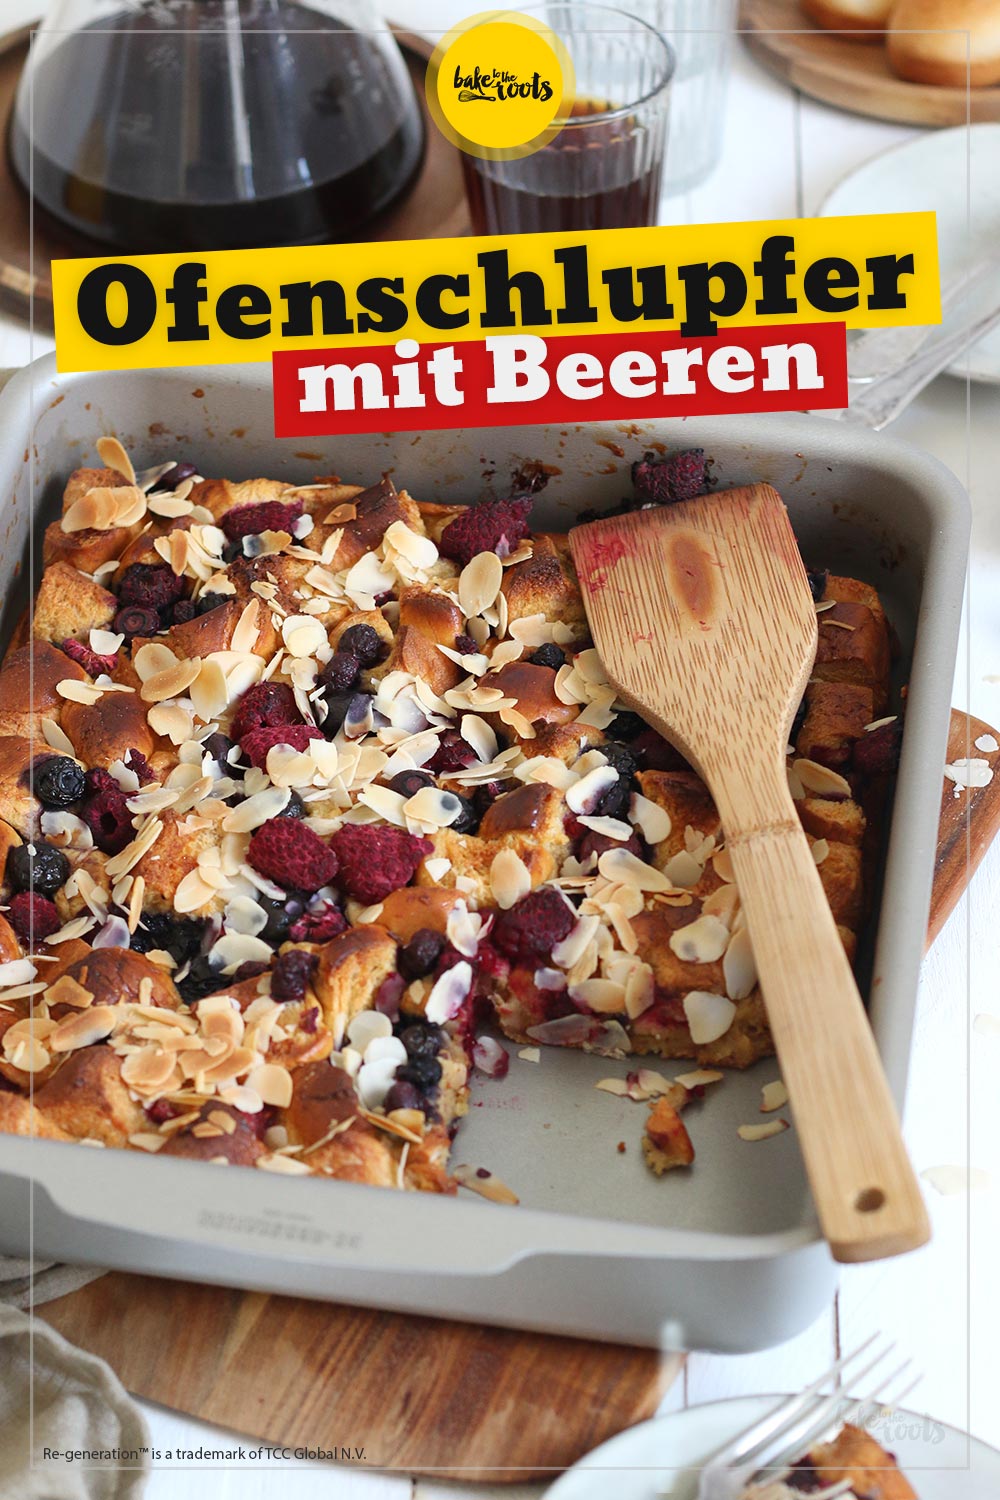 Ofenschlupfer mit Beeren | Bake to the roots